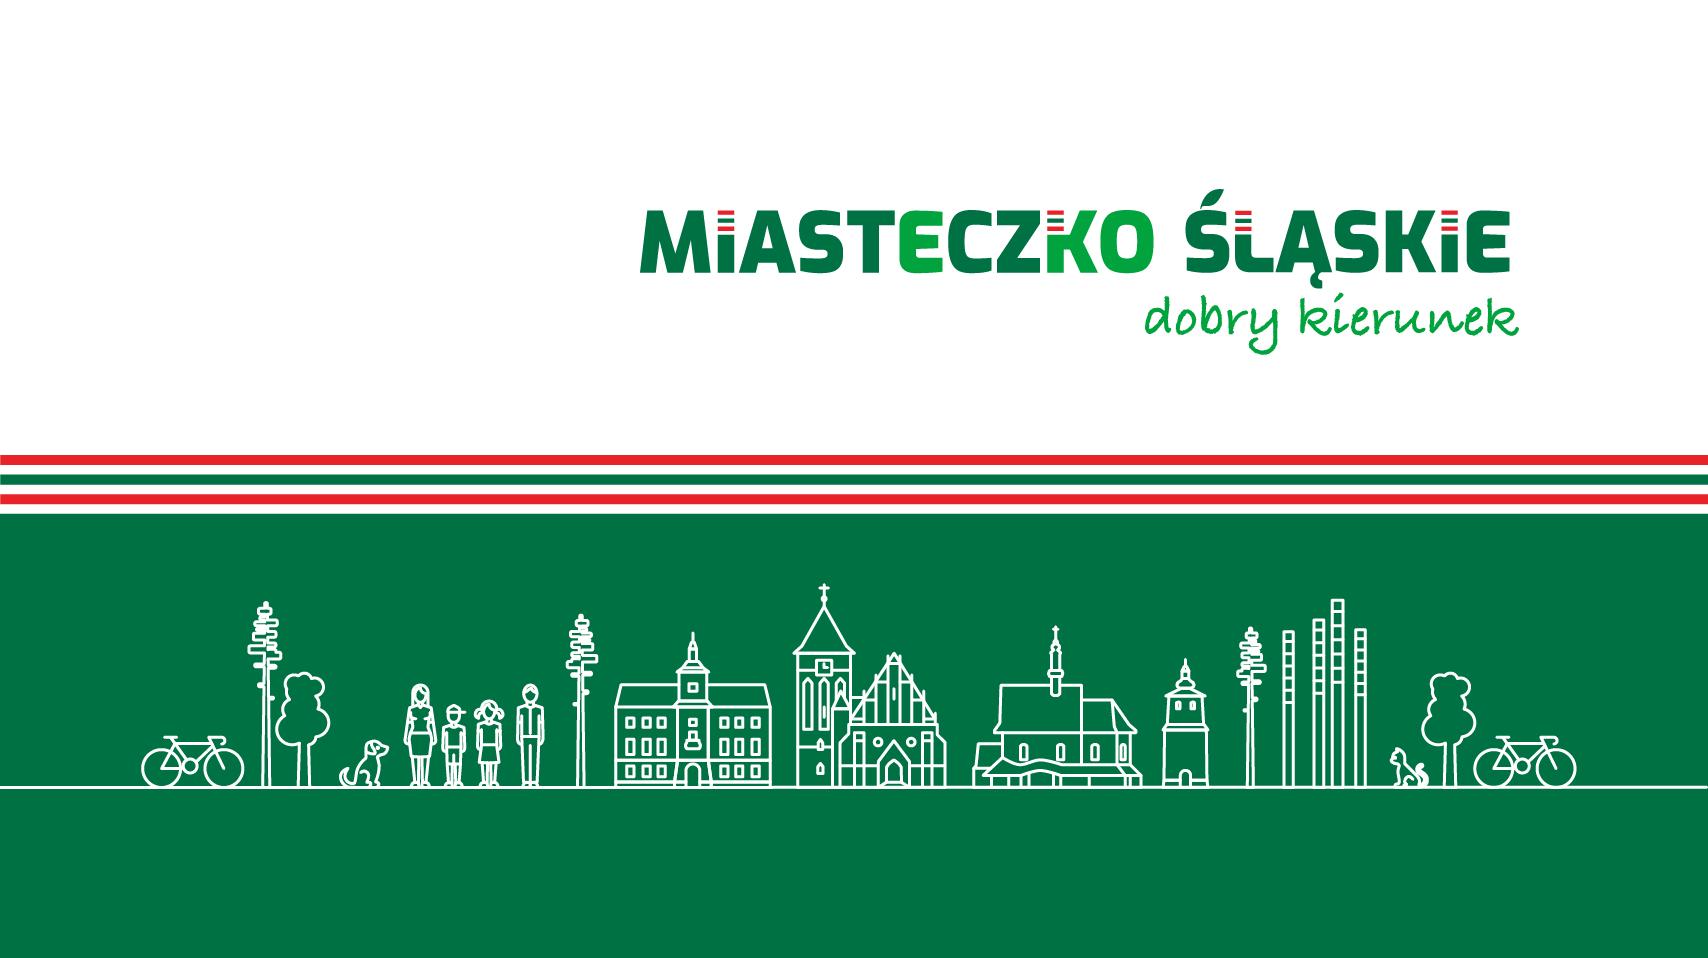 Porządek obrad XVII Sesji Rady Miejskiej w Miasteczku Śląskim